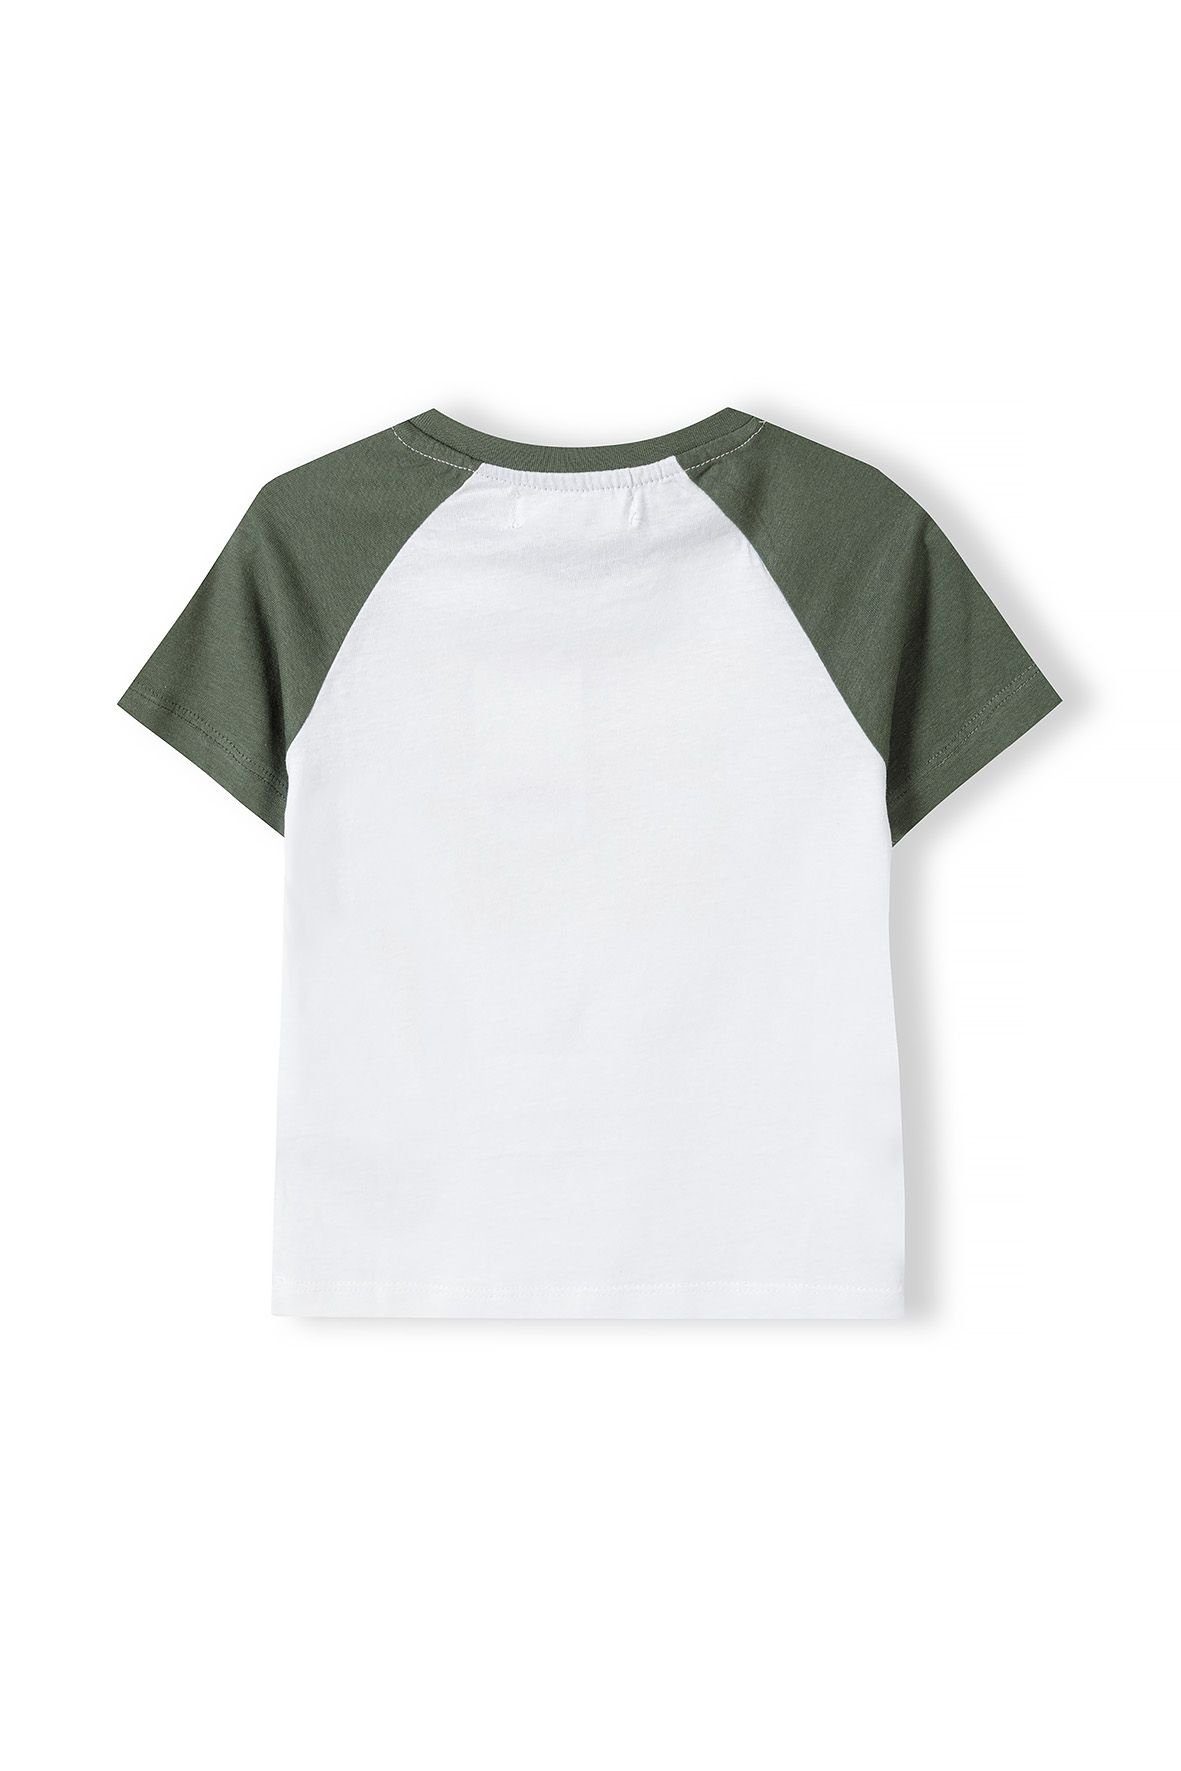 MINOTI T-Shirt Sommer (3y-14y) Ärmeln bunten T-Shirt mit